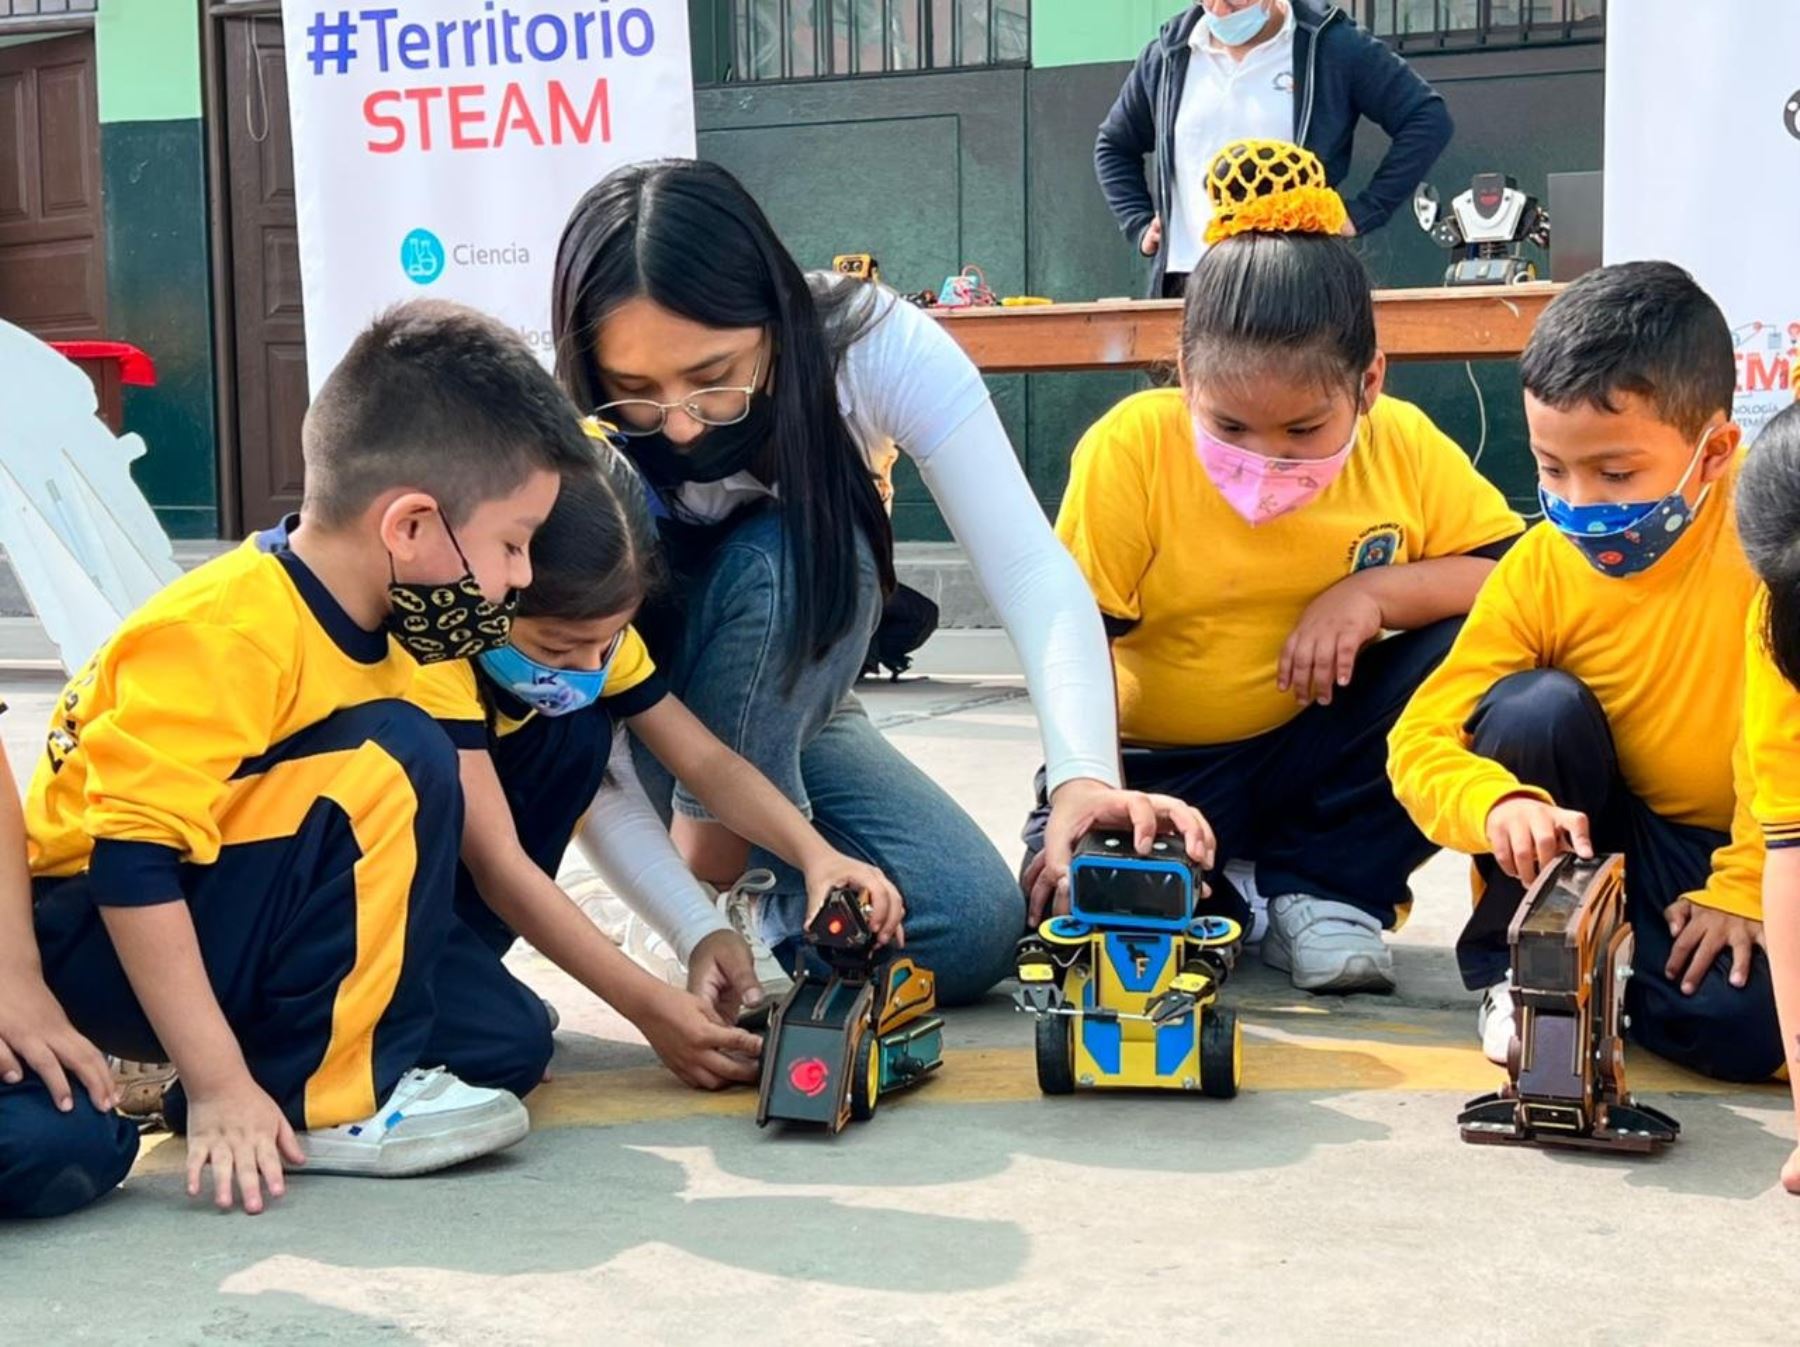 La metodología de Faraday Perú aporta innovación aprendiendo robótica de forma escalonada: mecánica, diseño, electrónica y programación. Foto: Facebook Faraday Perú